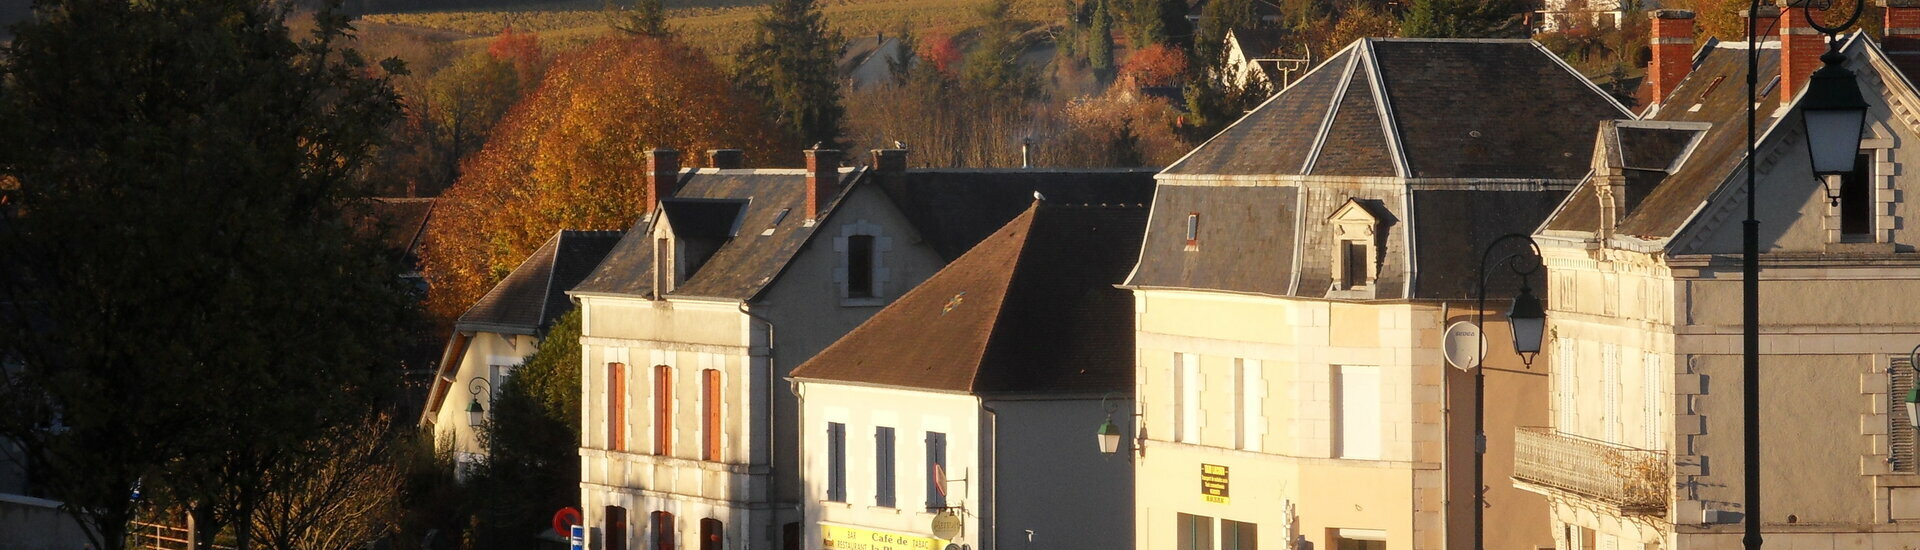 Mairie Commune Veaugues Sancerrois Pays-Fort Cher